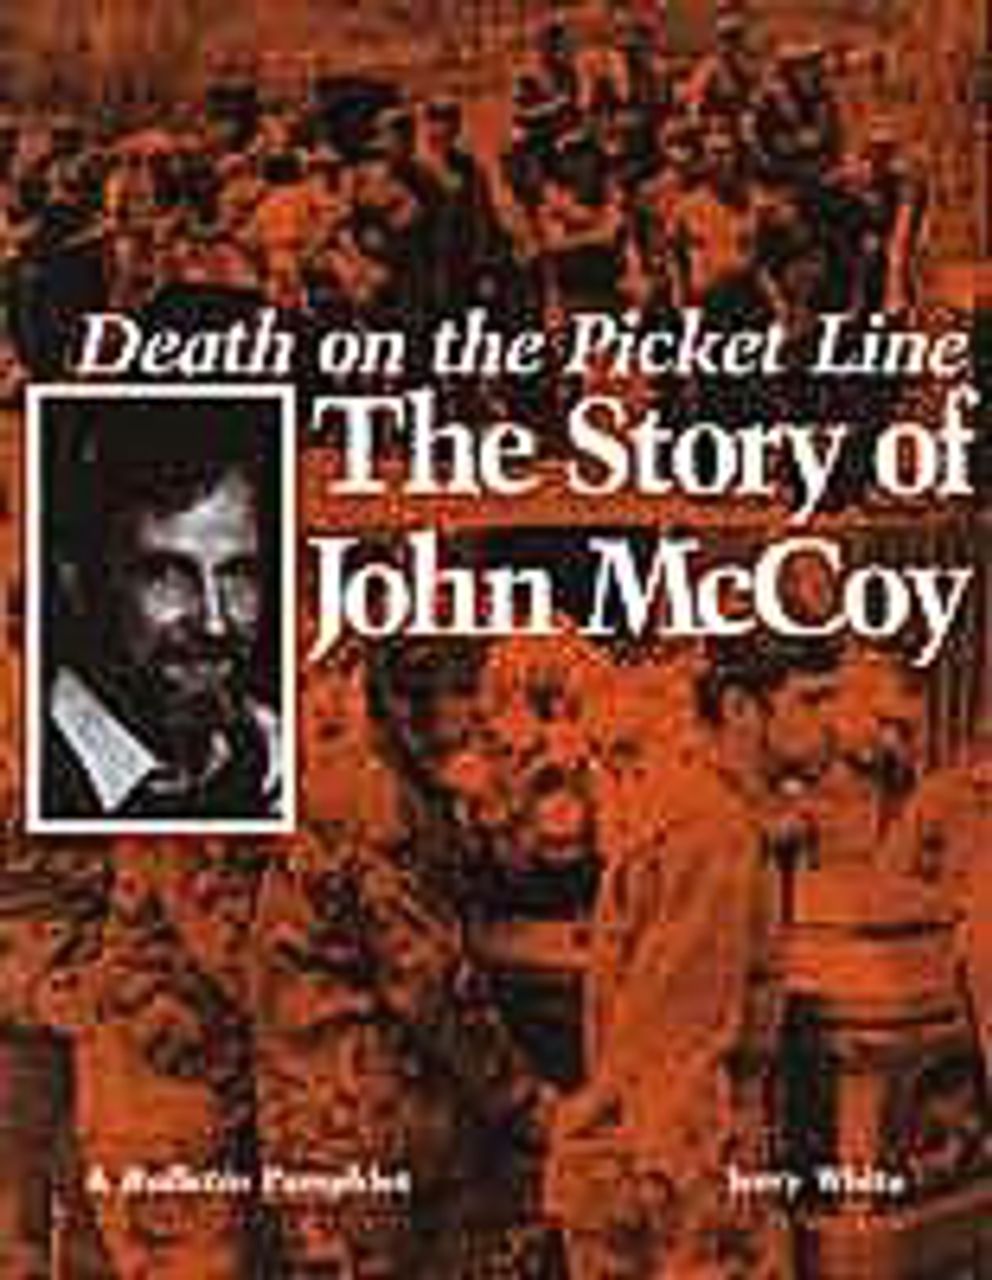 McCoy pamphlet